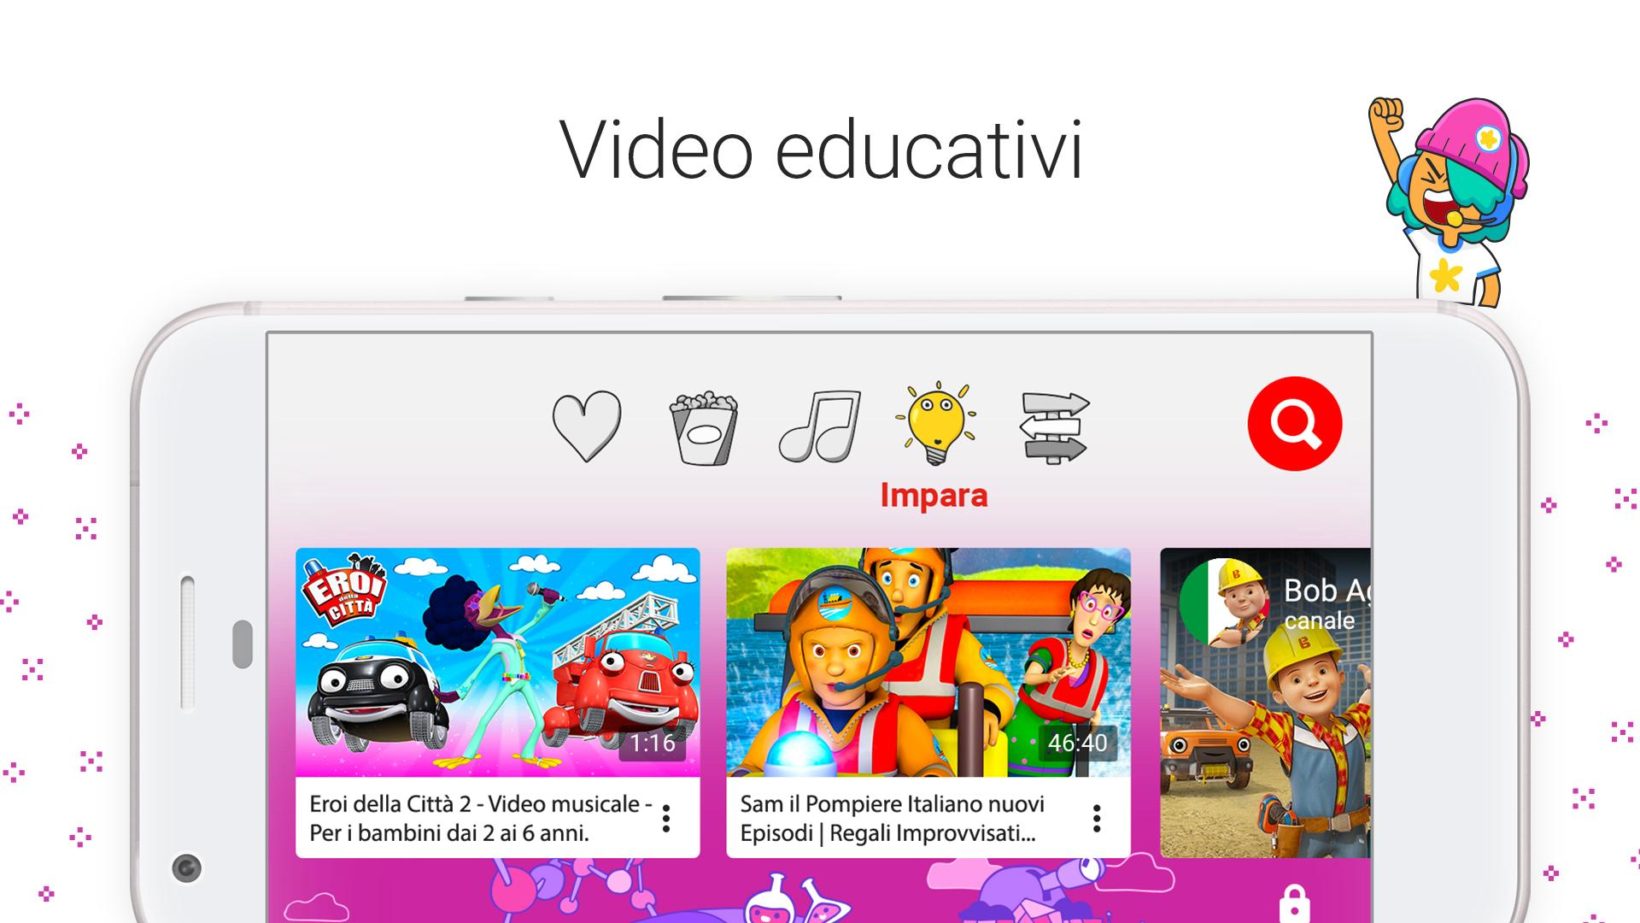 YouTube Kids è arrivata in Italia, la recensione dell’app con video a prova di bimbo